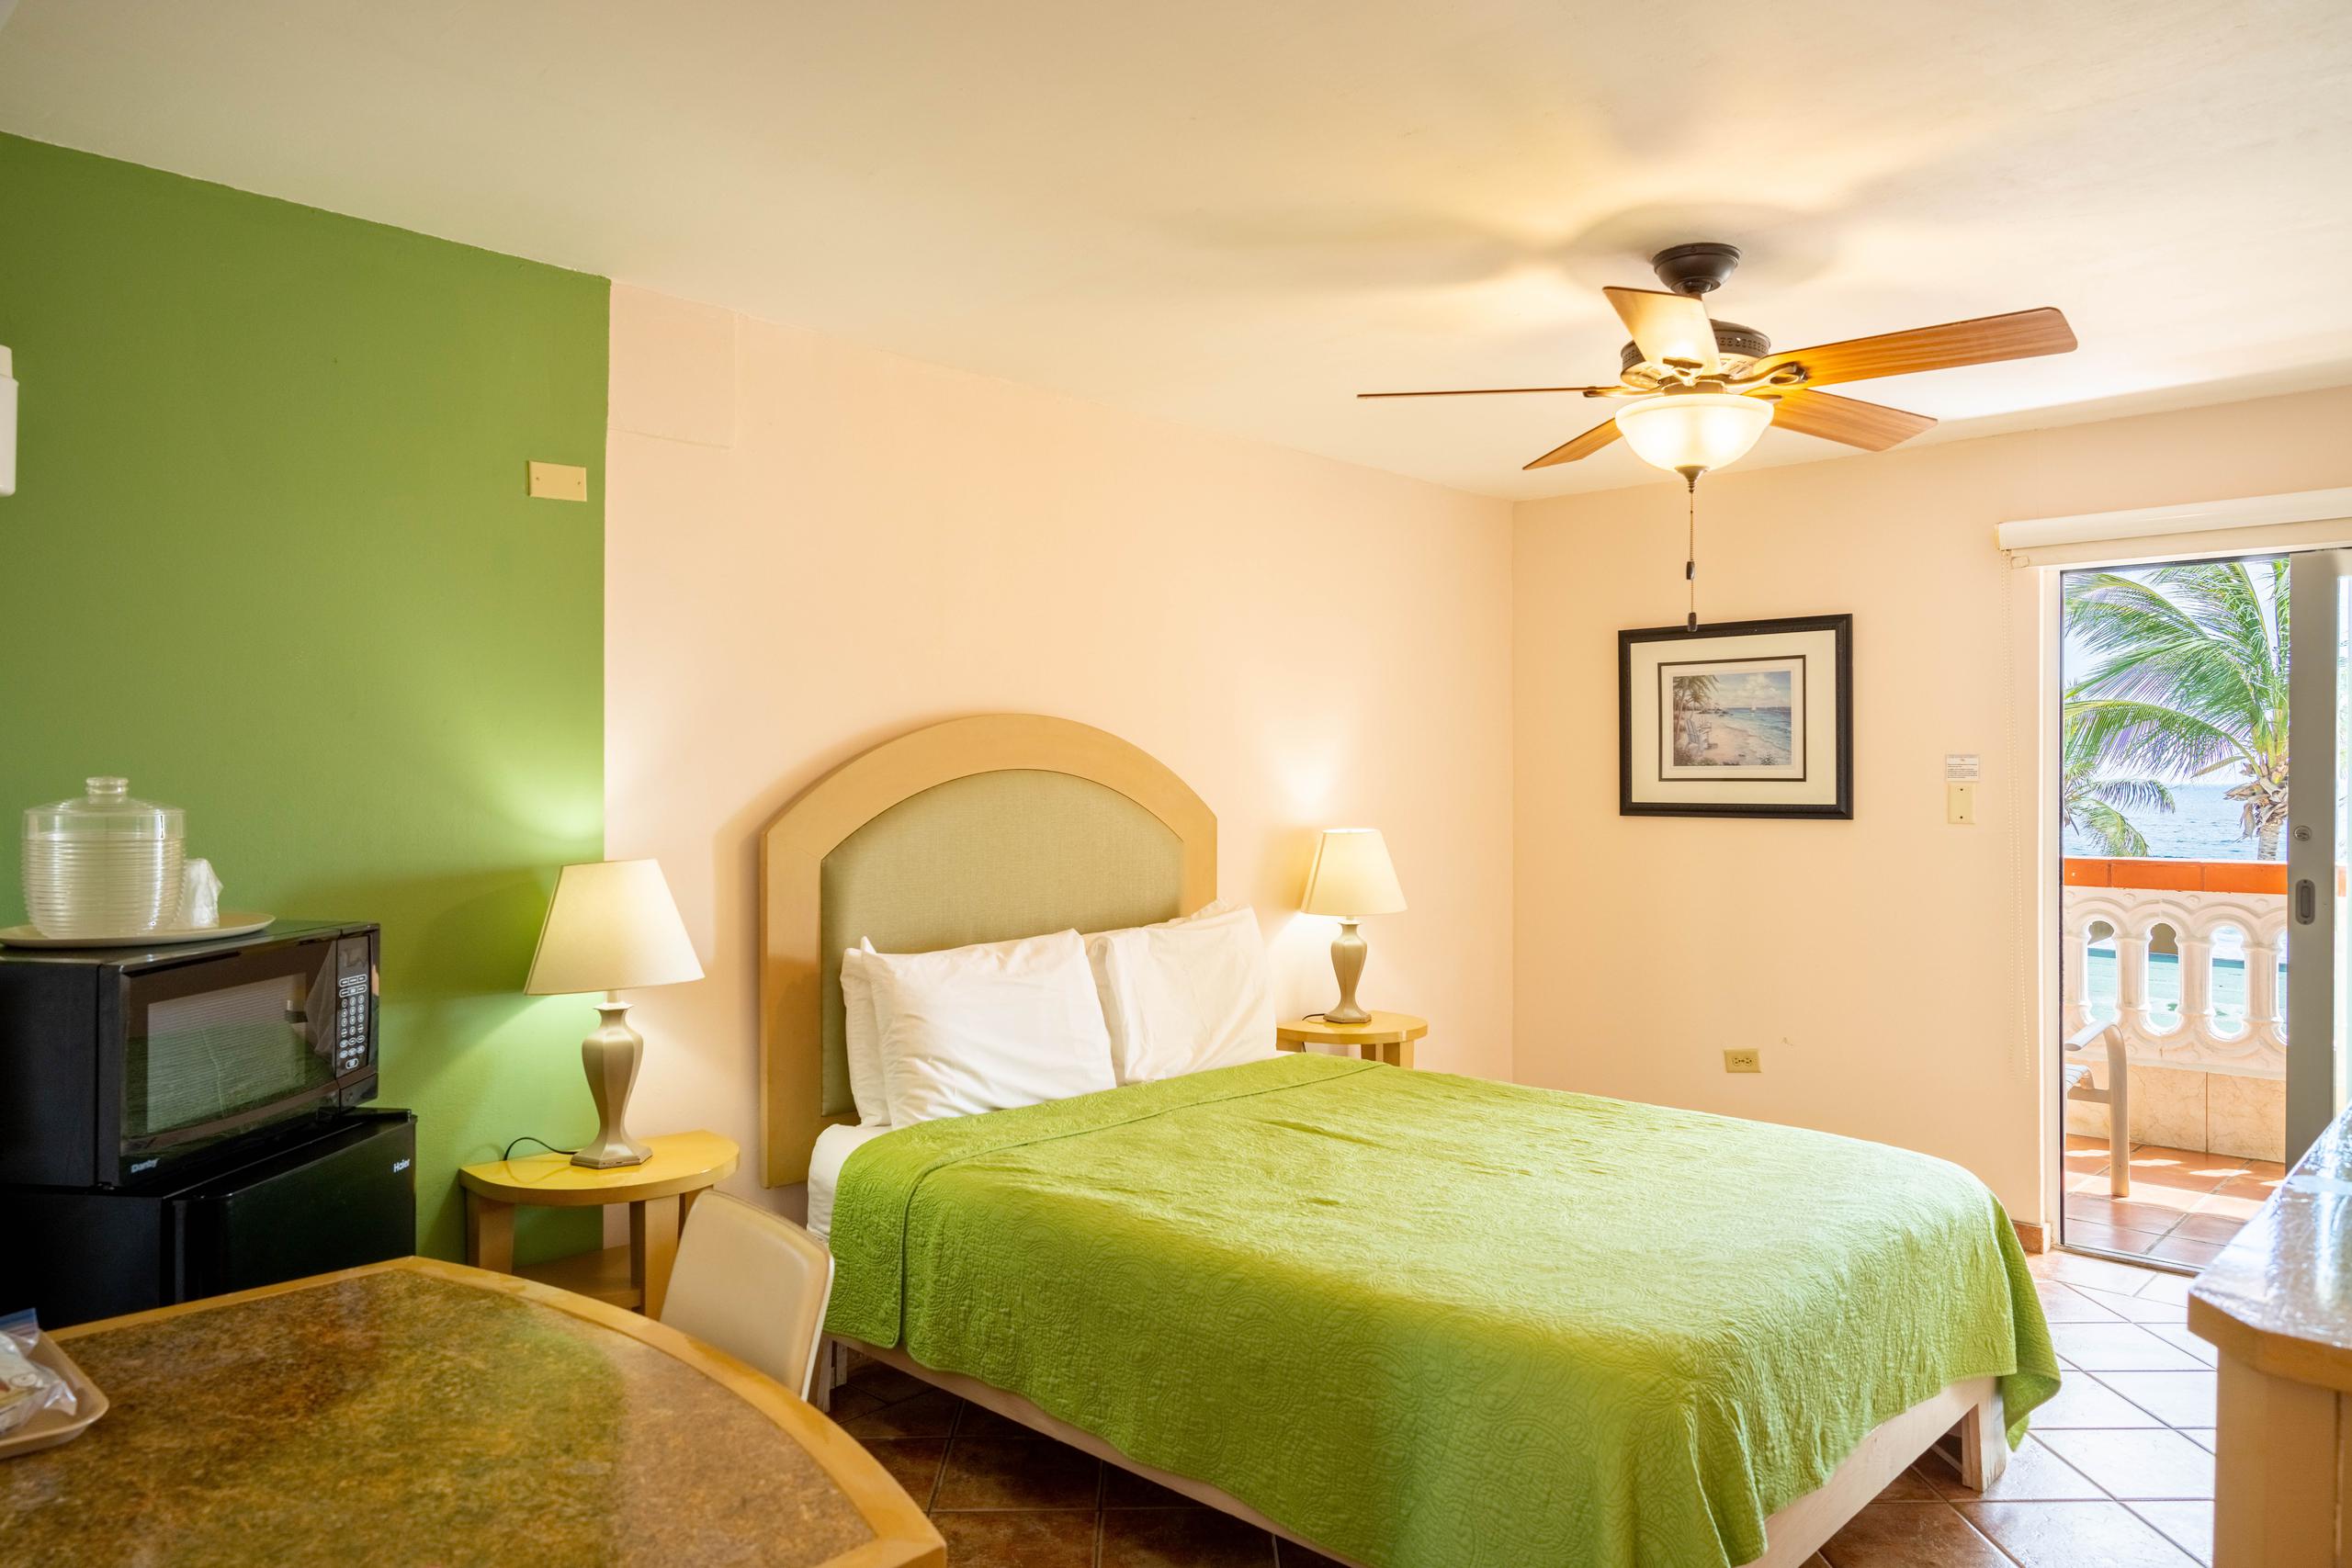 La hospedería cuenta con habitaciones con una o dos camas o suites de dos y tres habitaciones.